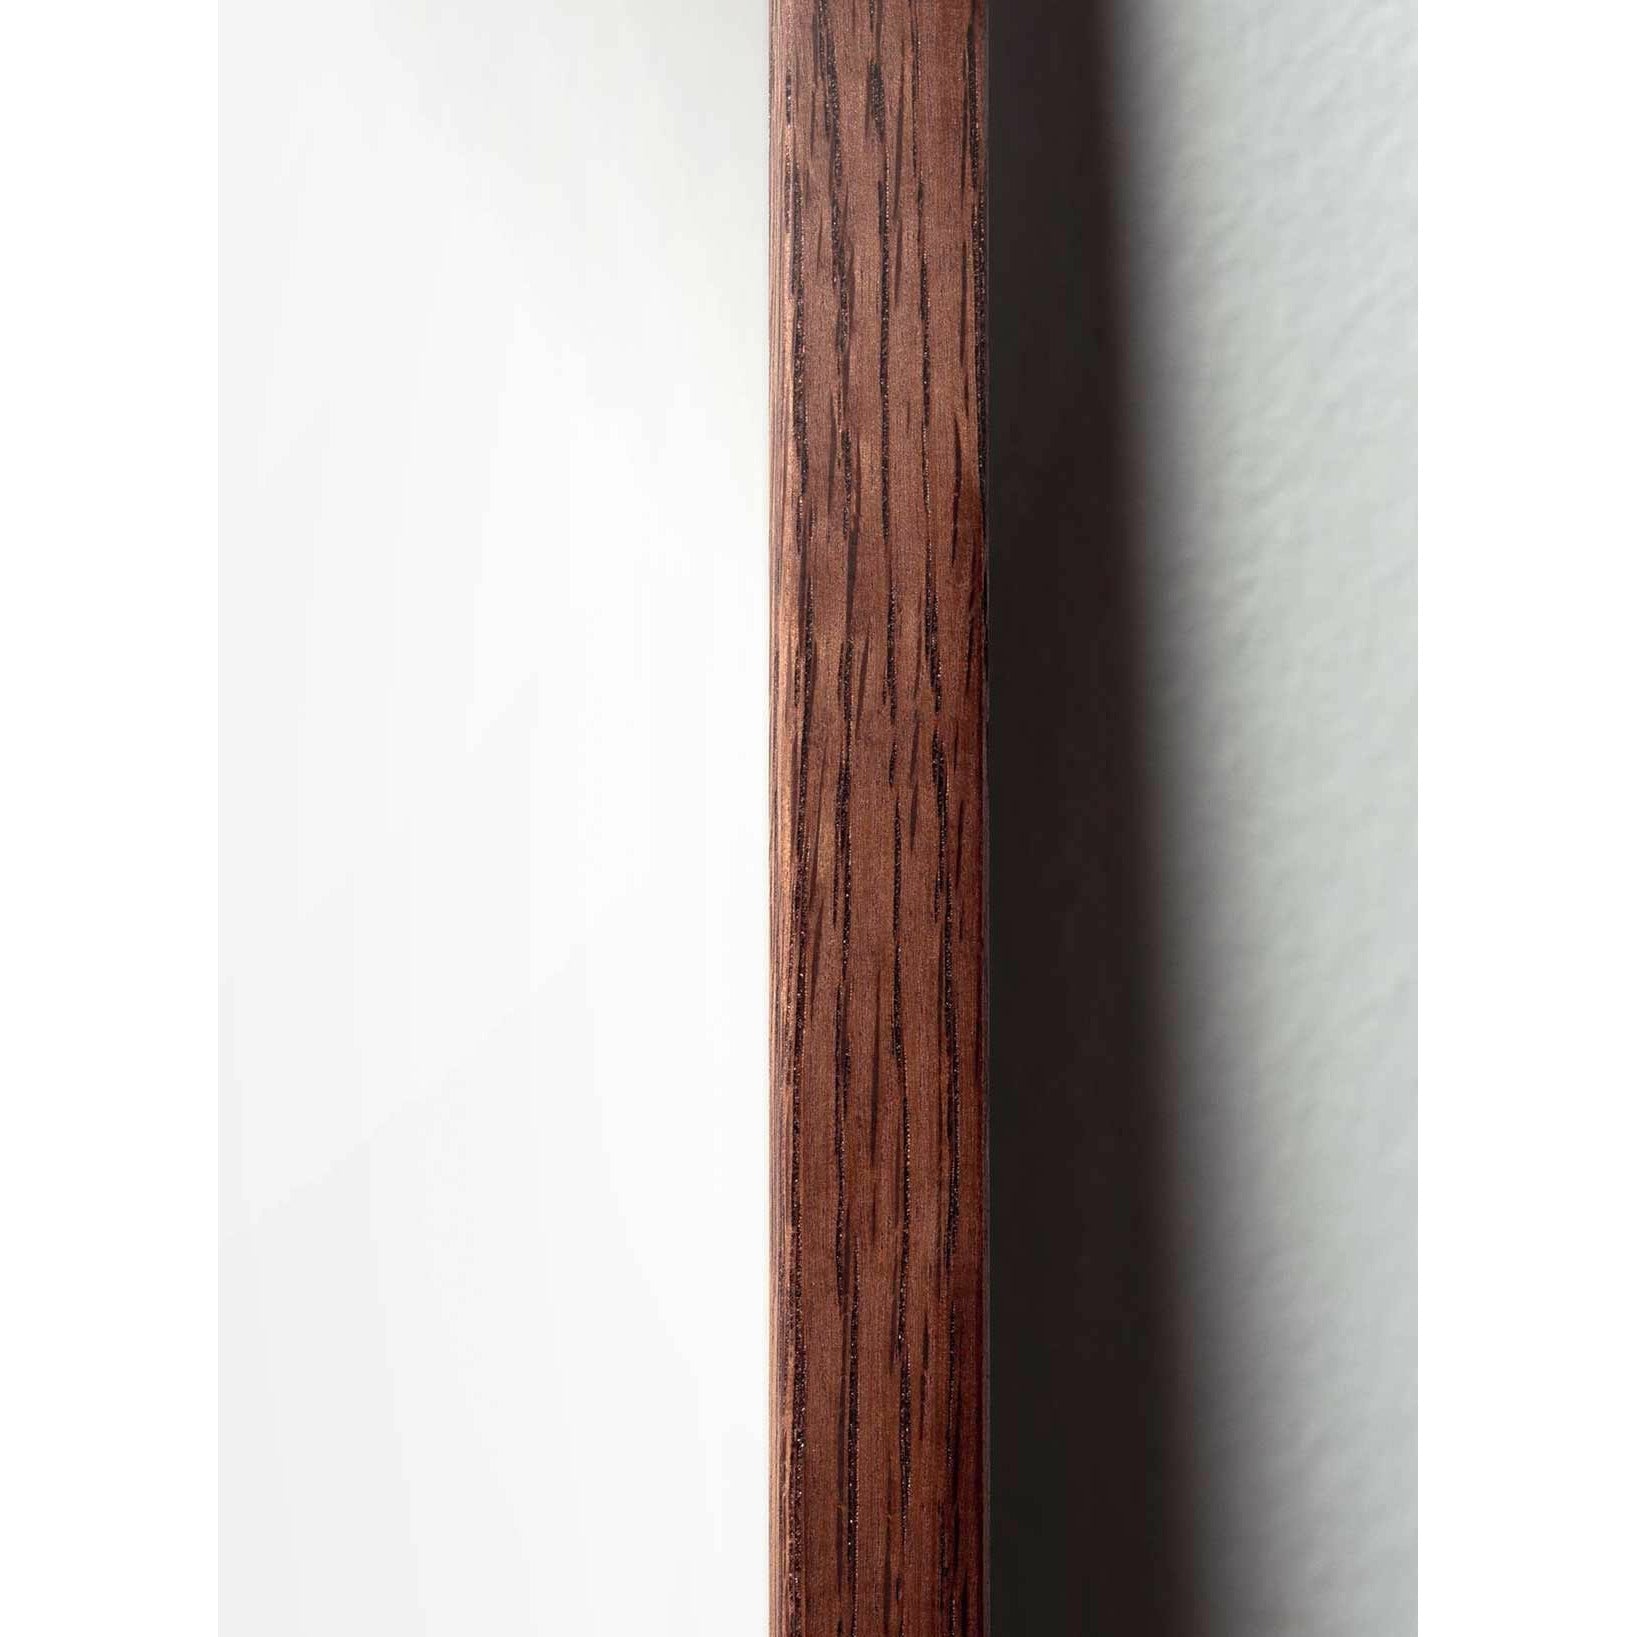 Pomysły plakat linii mrówek, rama wykonana z ciemnego drewna 50x70 cm, białe tło